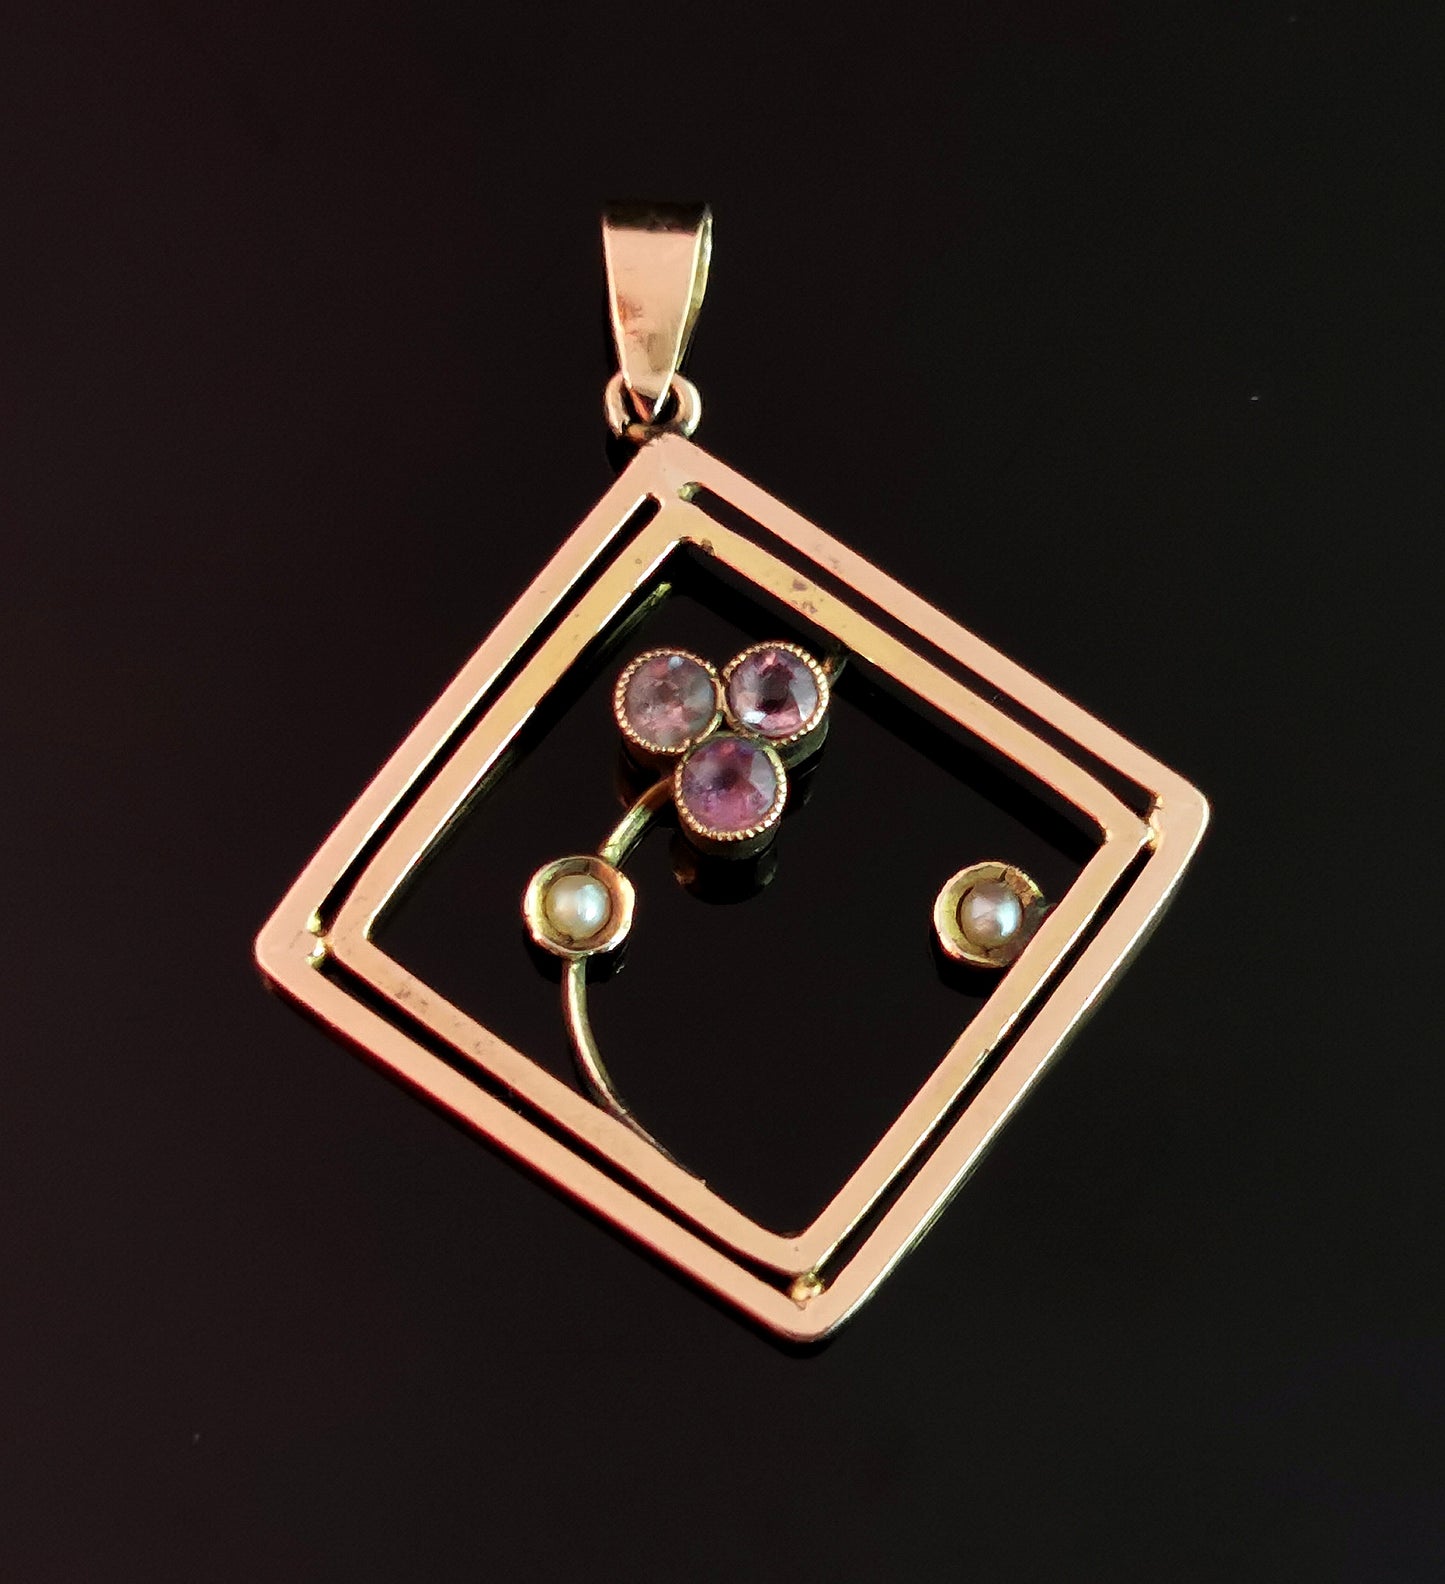 Antique Art Nouveau Amethyst and pearl pendant, 9ct gold, trefoil, floral